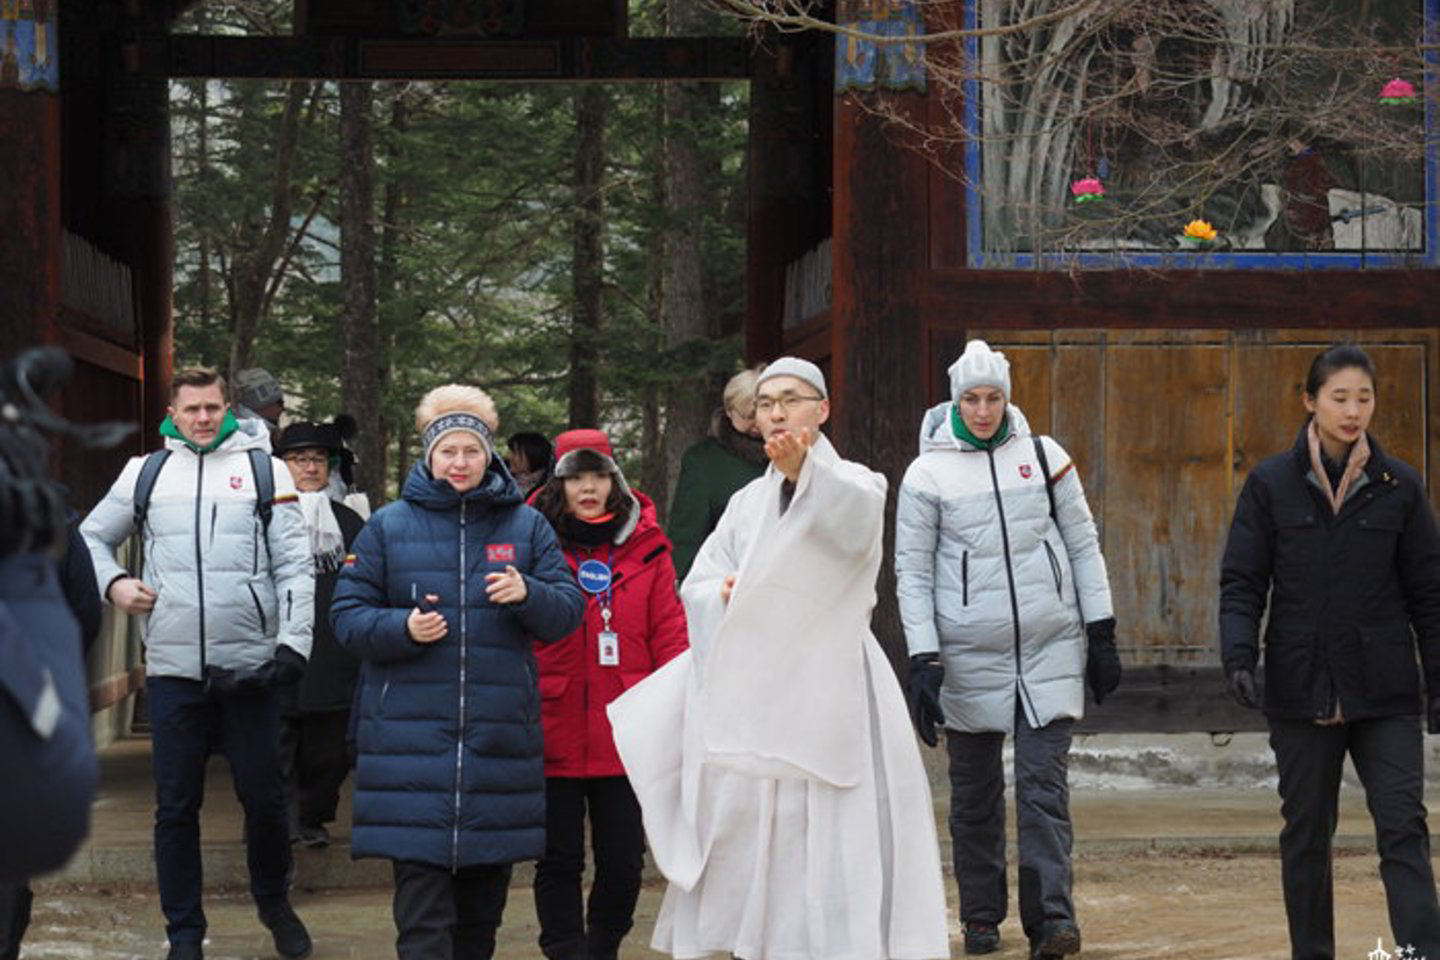  Apie D.Grybauskaitės simpatijas budizmui pranešė net Korėjos budistų televizija.<br> woljeongsa.org nuotr.